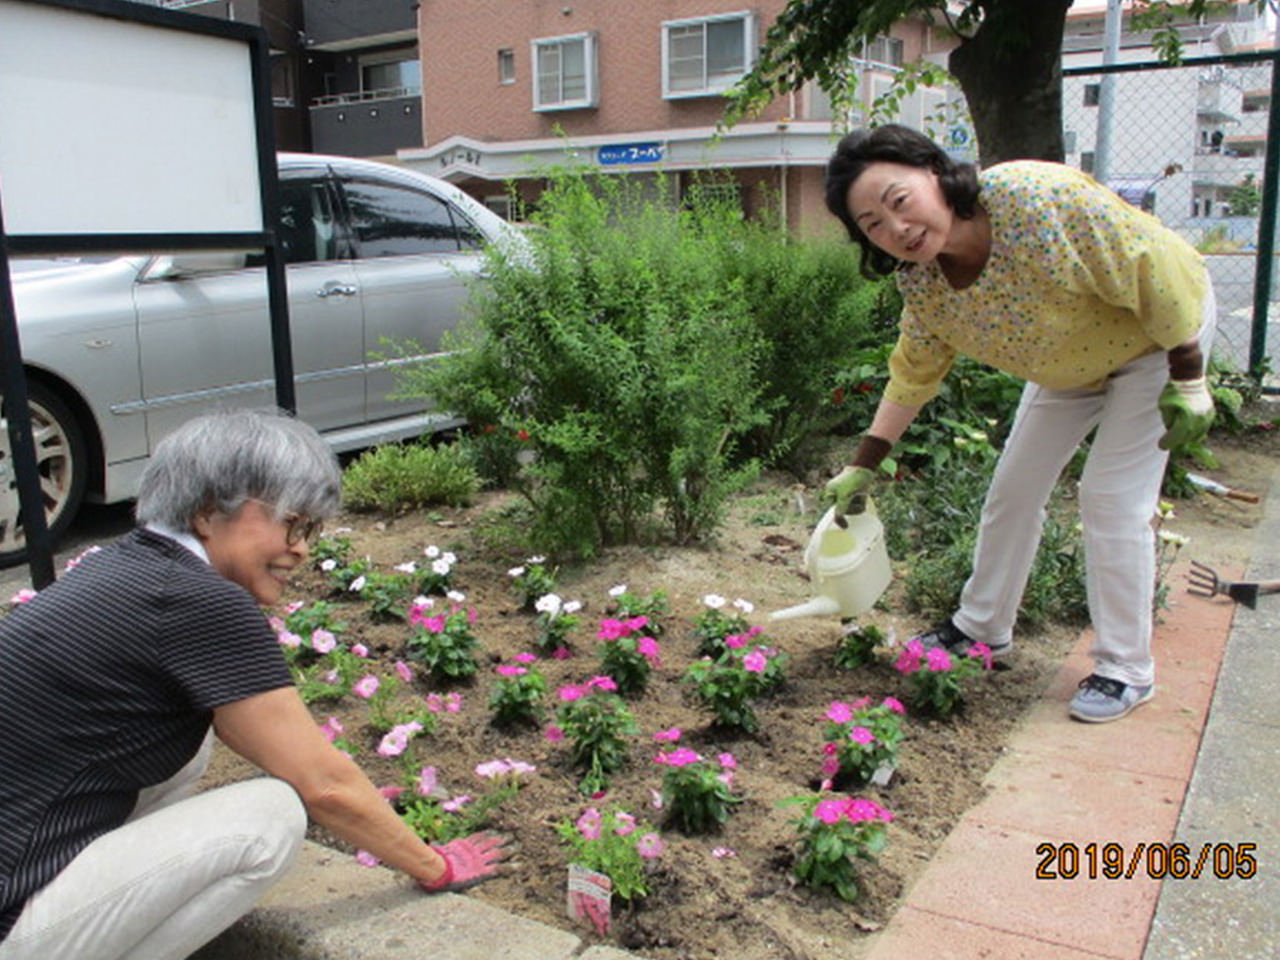 梅雨入り前に、居住者とスタッフと一緒に花壇の花の植え替えをしました。今回は暑さに強い『ペチュニア』と『日々草』を植えました。いつも笑顔がステキなおふたりです。